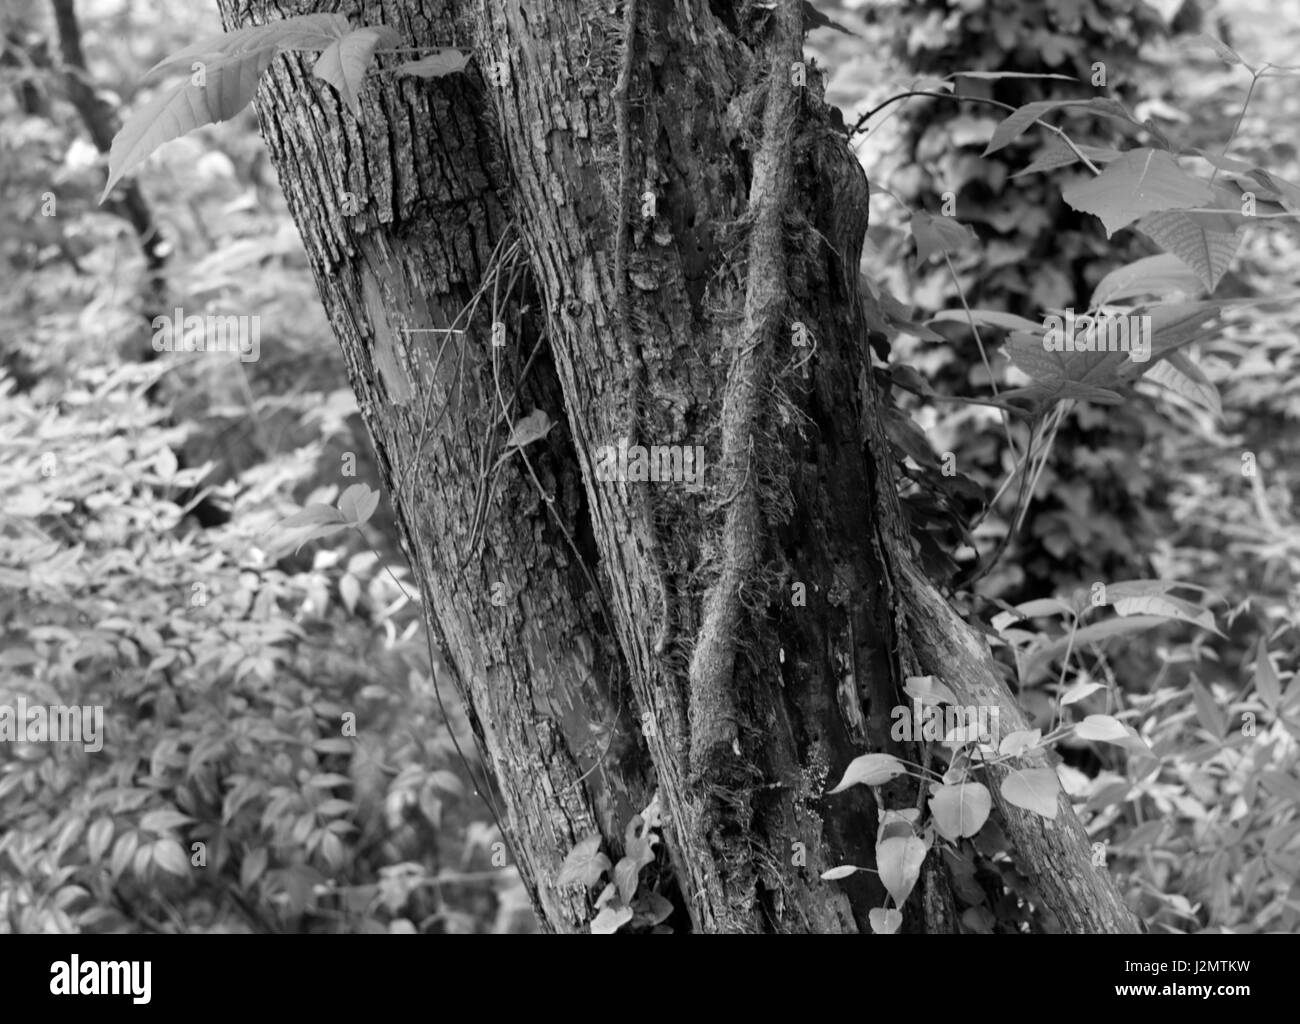 Black and White photos wildlife, plants, trees Stock Photo